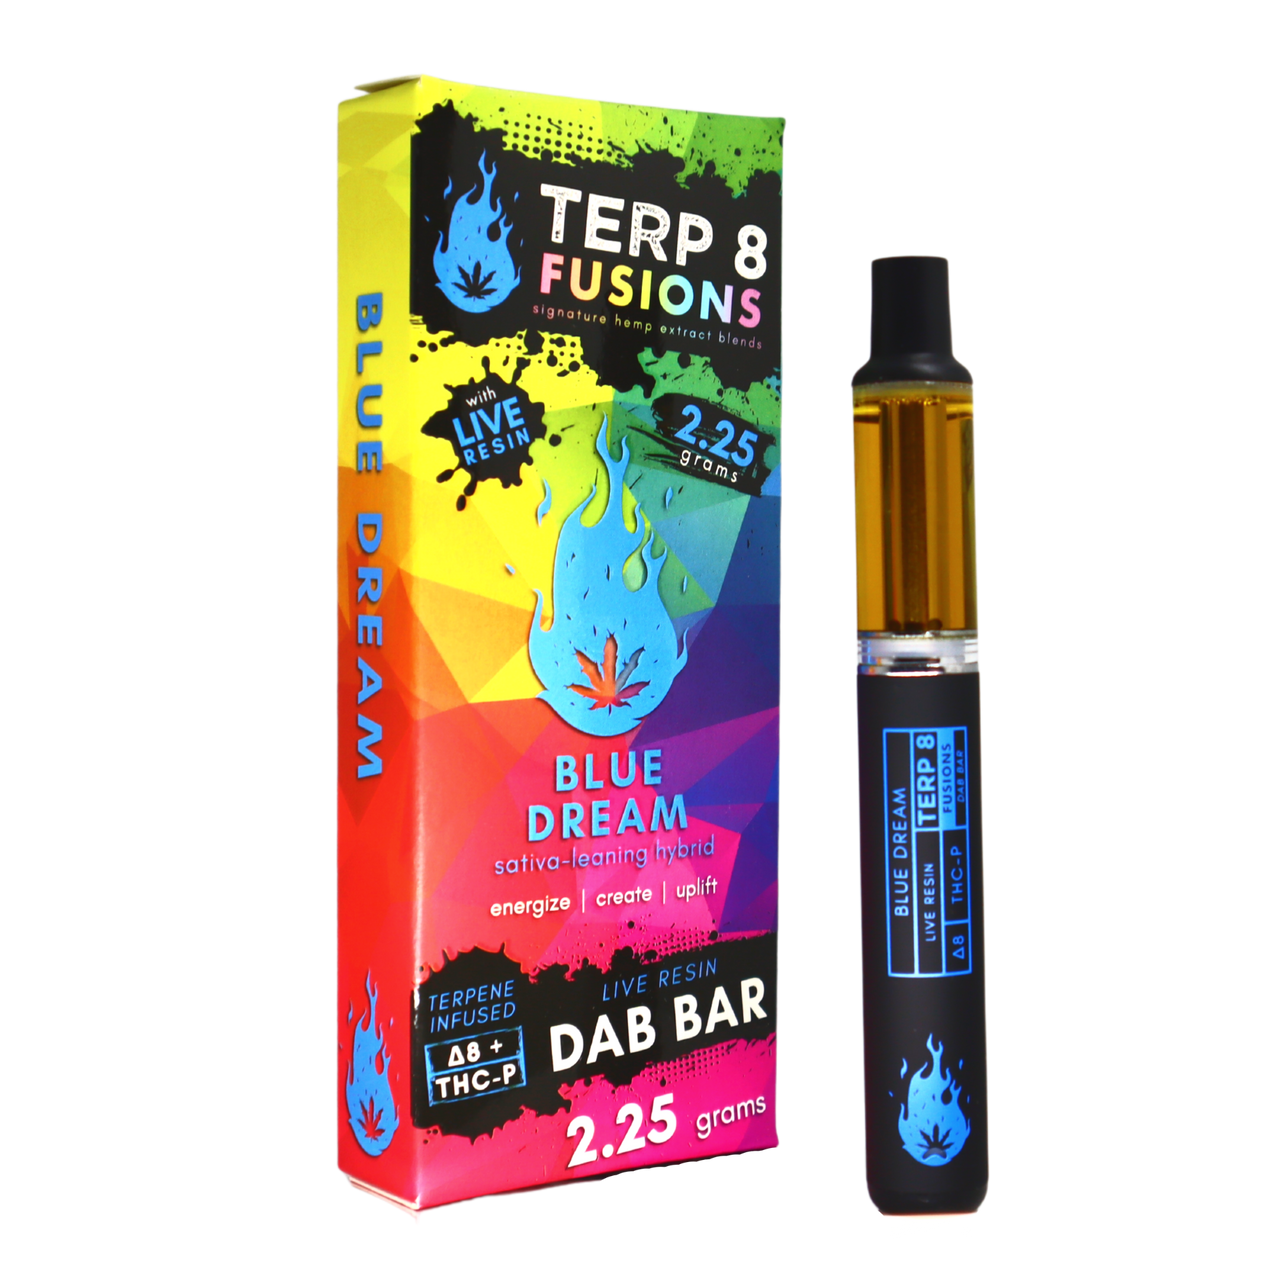 Terp 8 Delta 8 & THCP Live Resin Disposable Vape Pen Blue Dream 2.25g